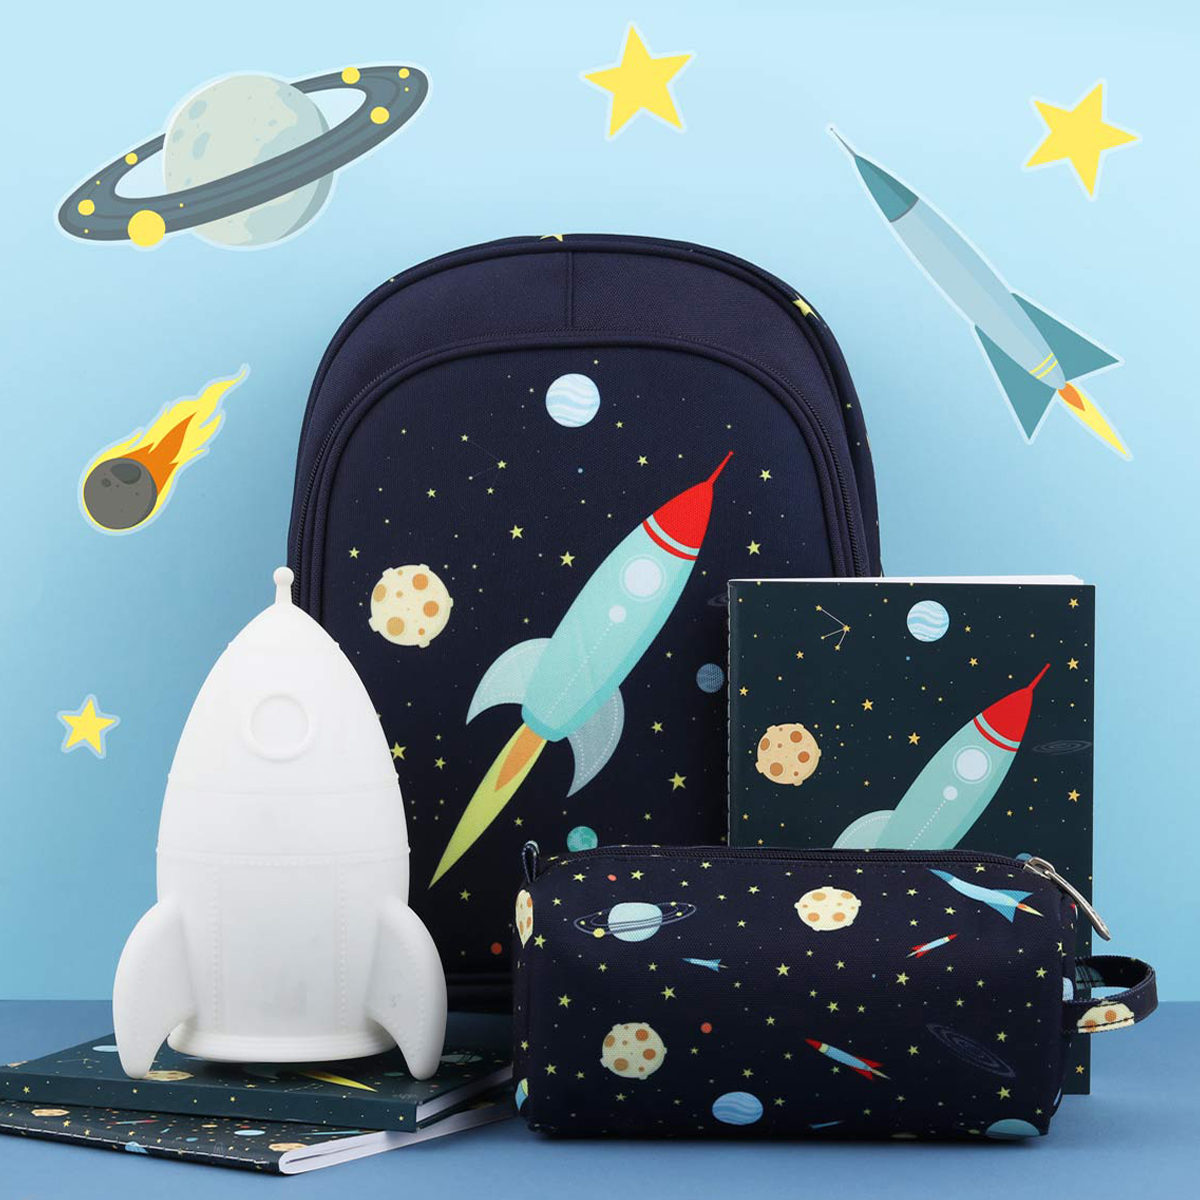 Packing space. Подарок любителю космоса. Подарок ребенку любителю космоса. Вещи для любителей космоса. Рюкзак космический модный.